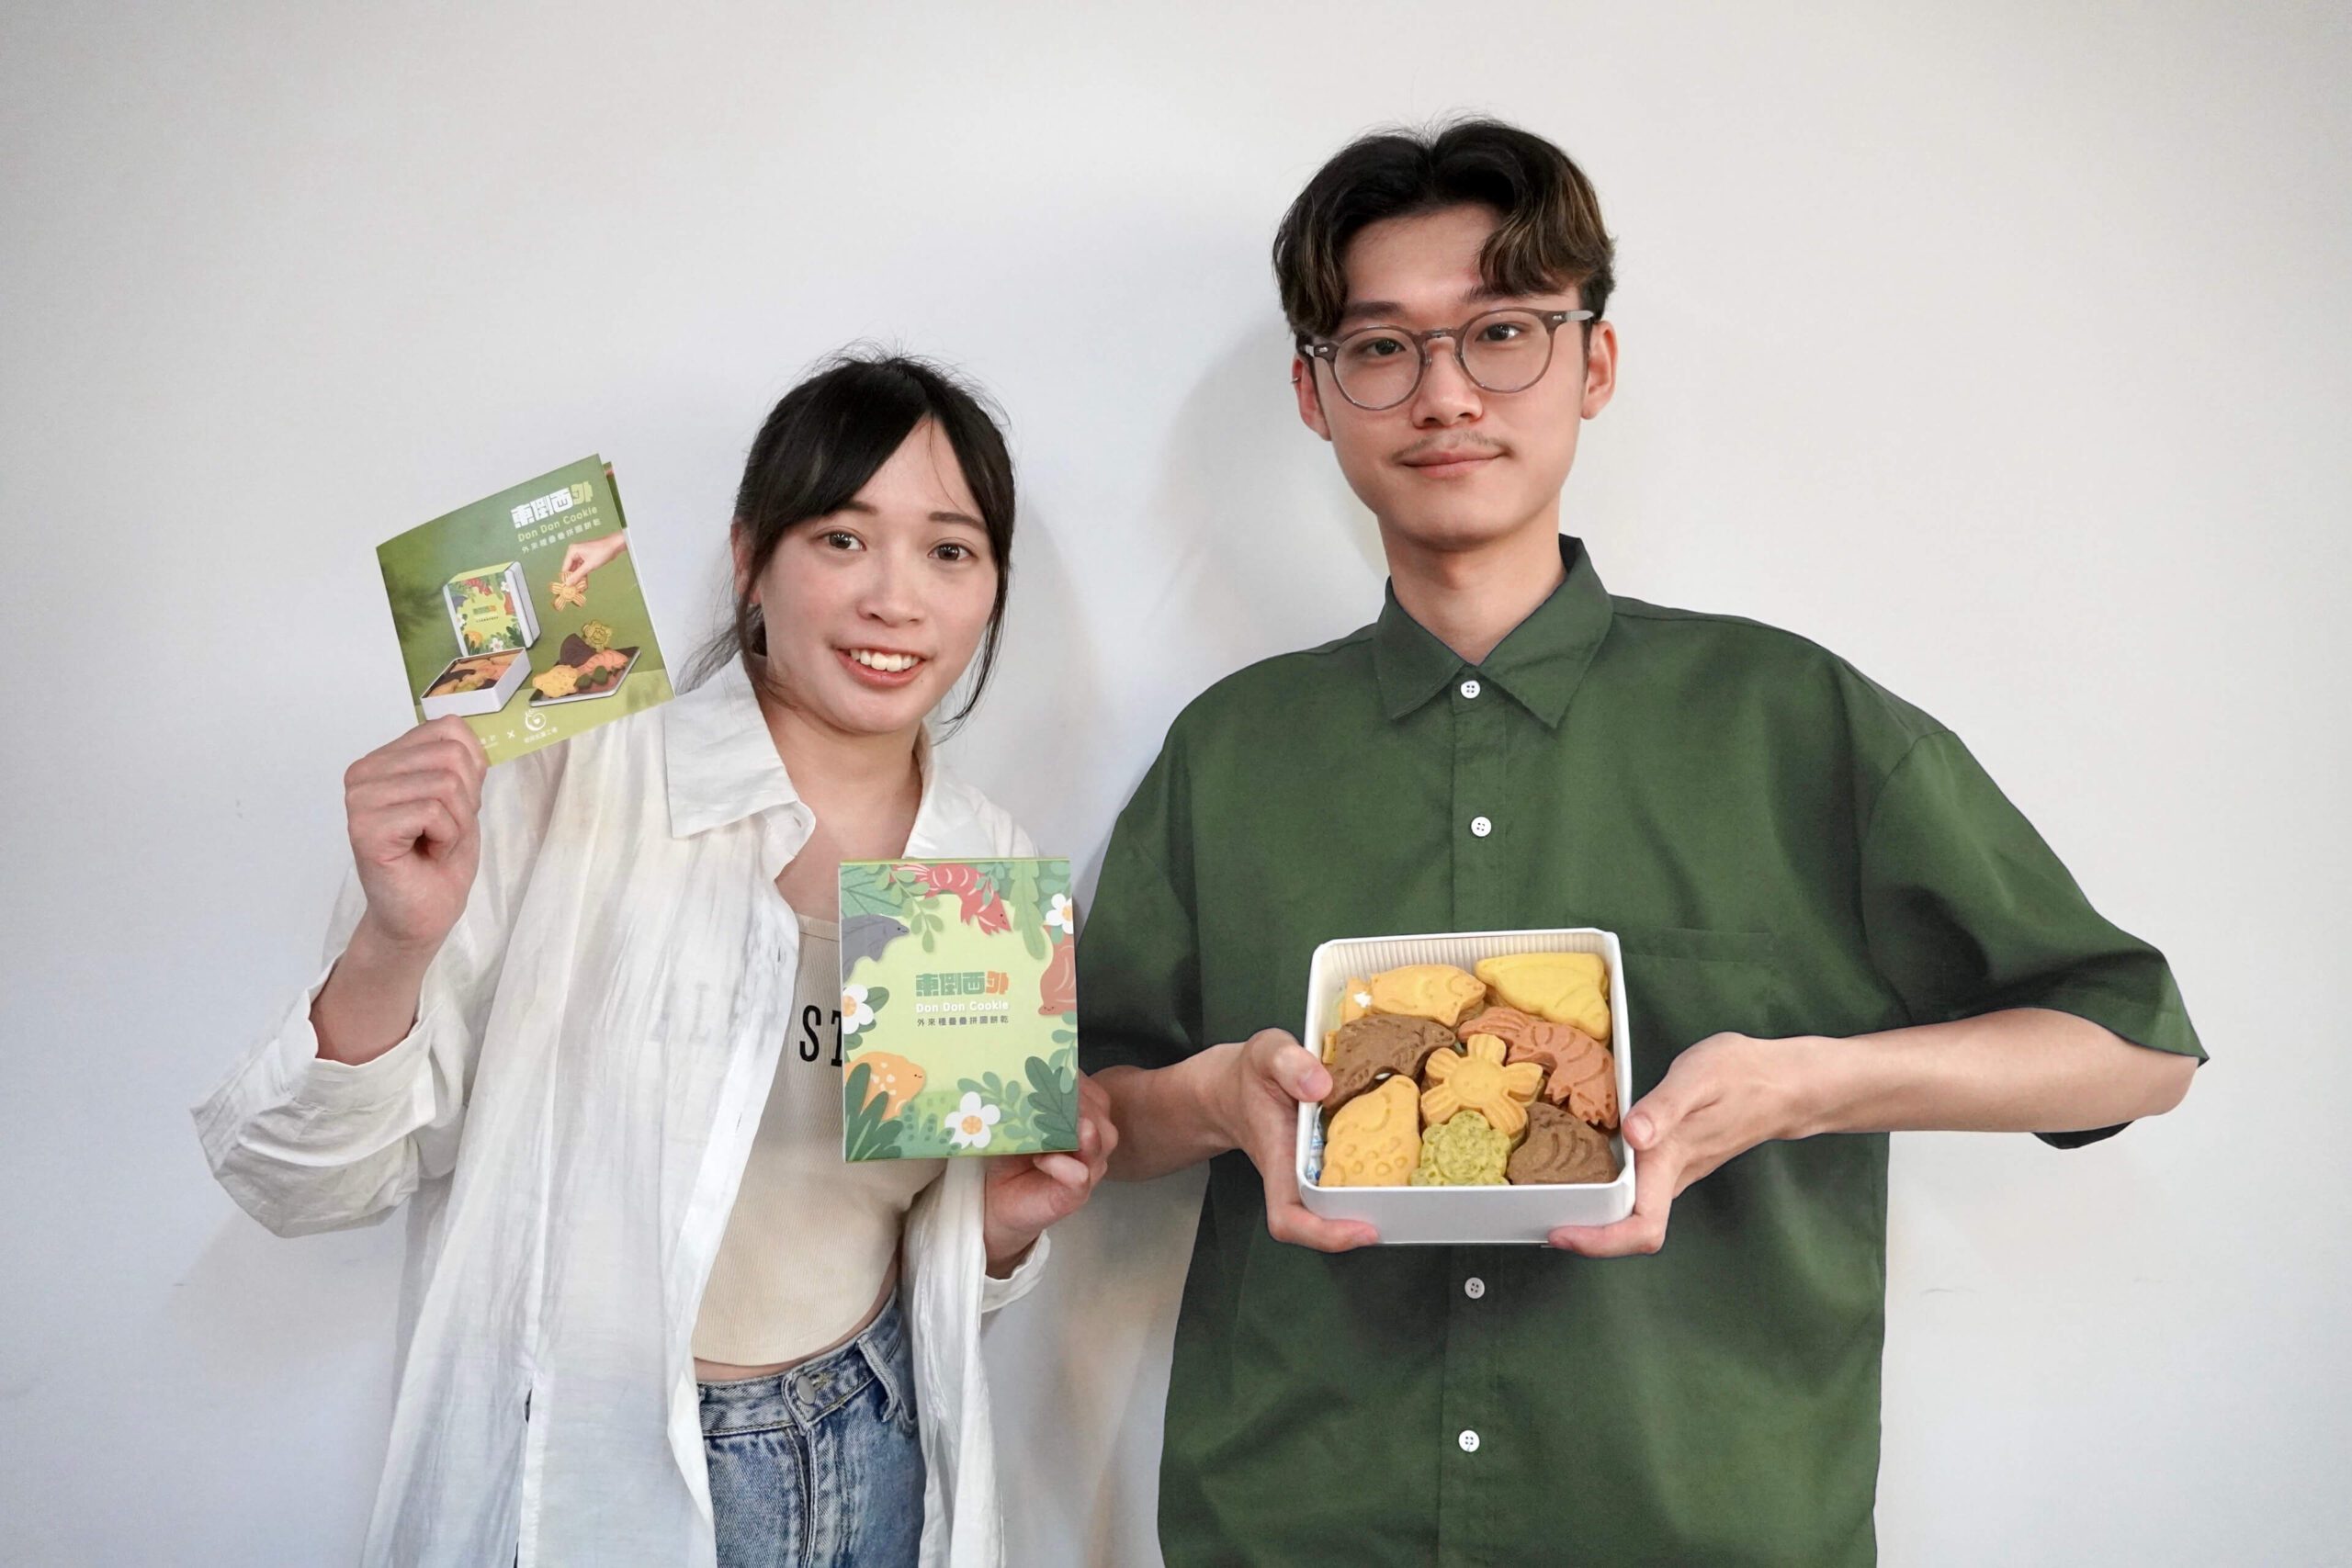 臺科大推出外來種生物餅乾上架募資平台　「東倒西外」鎖定環境保育議題